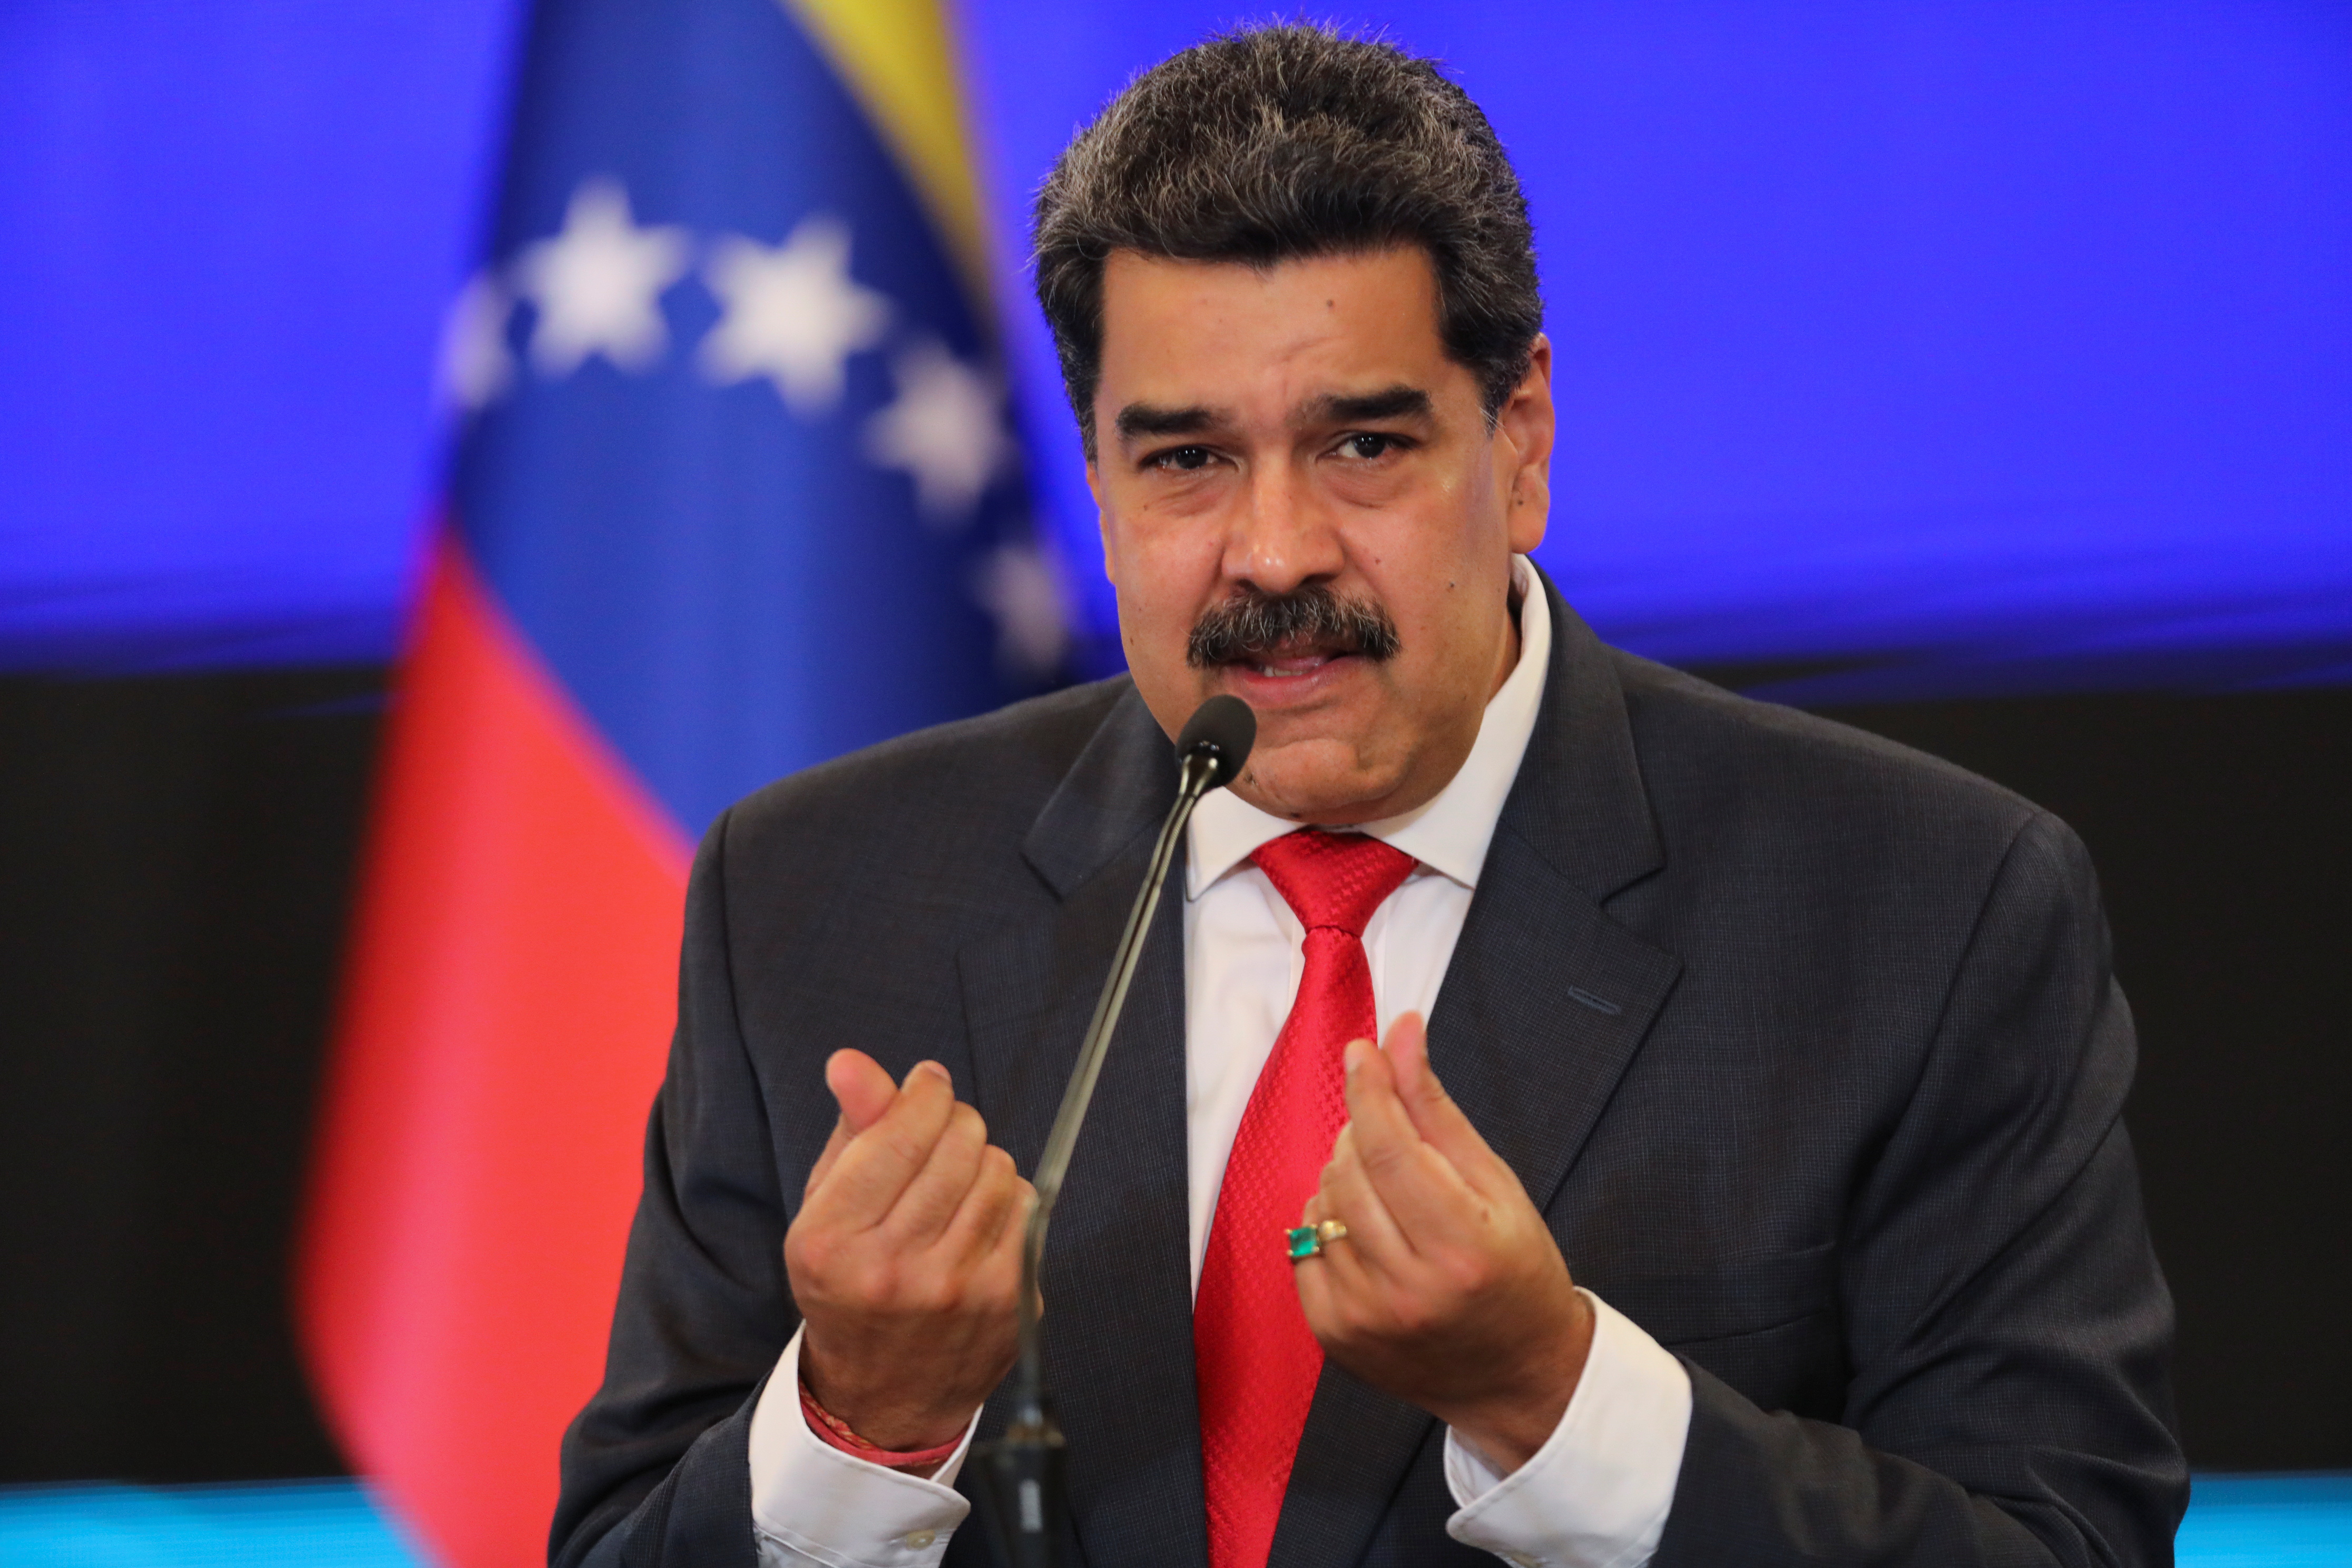 El dólar no es ni será la moneda oficial en Venezuela, advierte Maduro